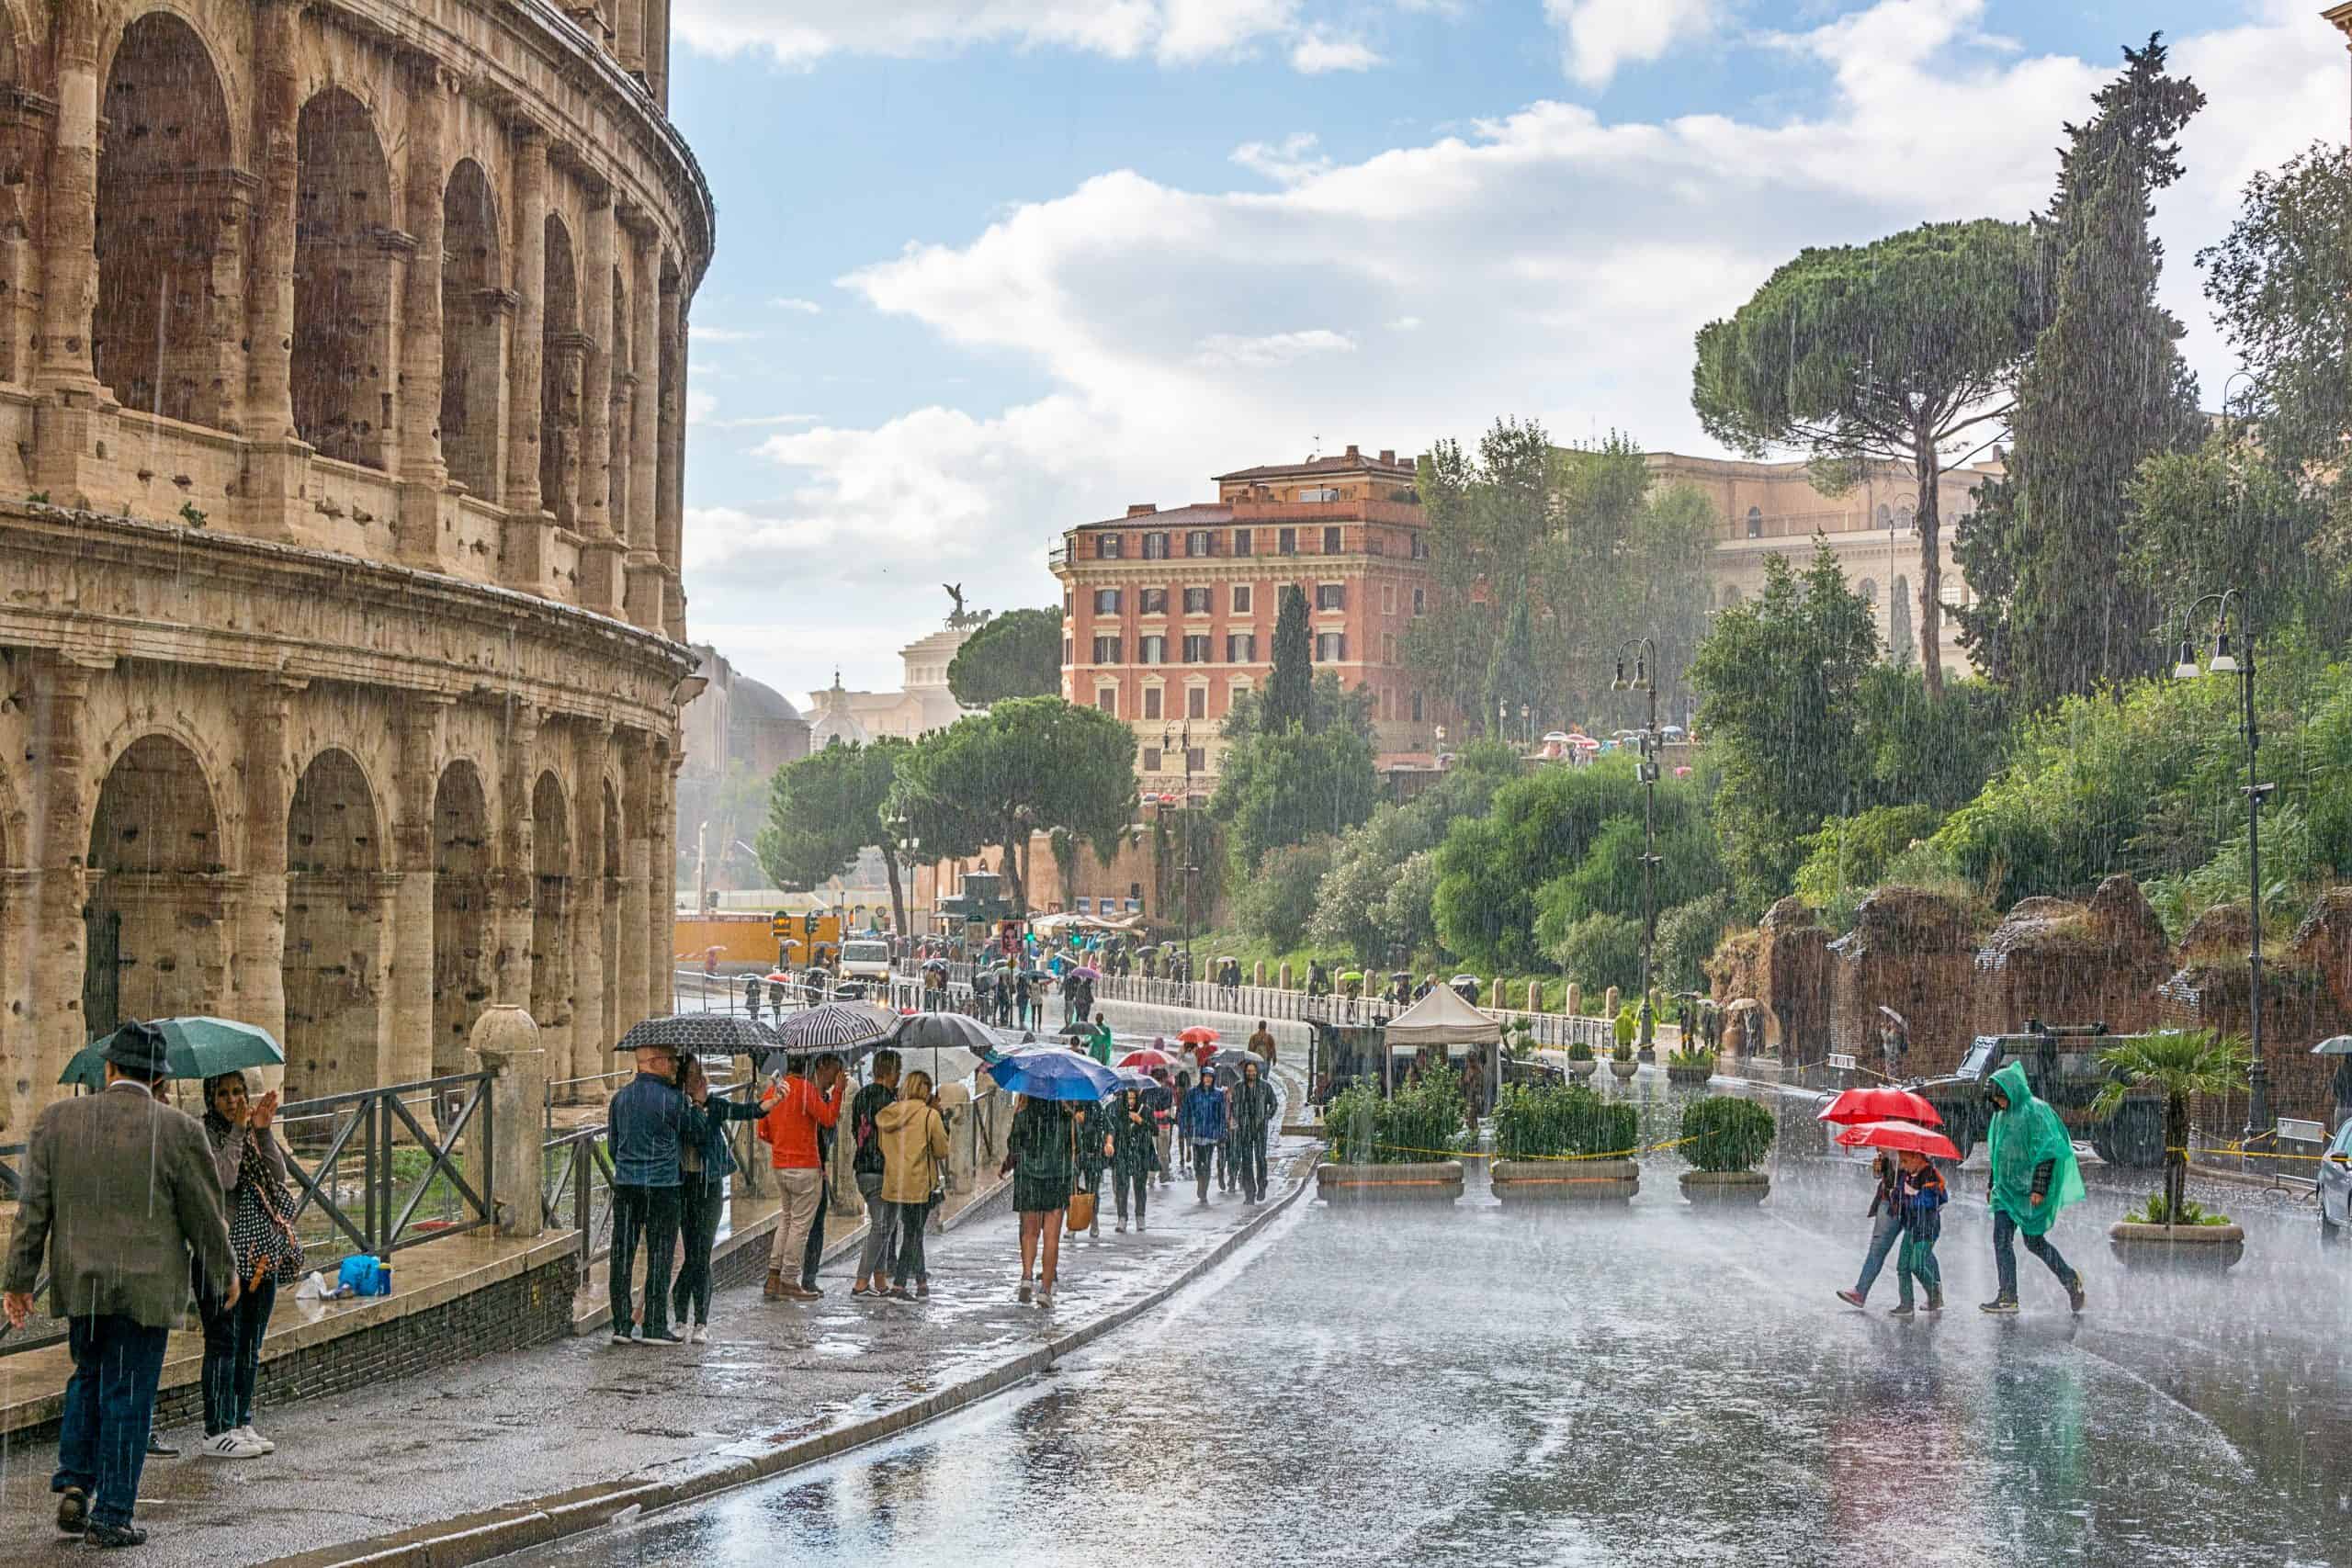 Rainy day in Rome, Italy